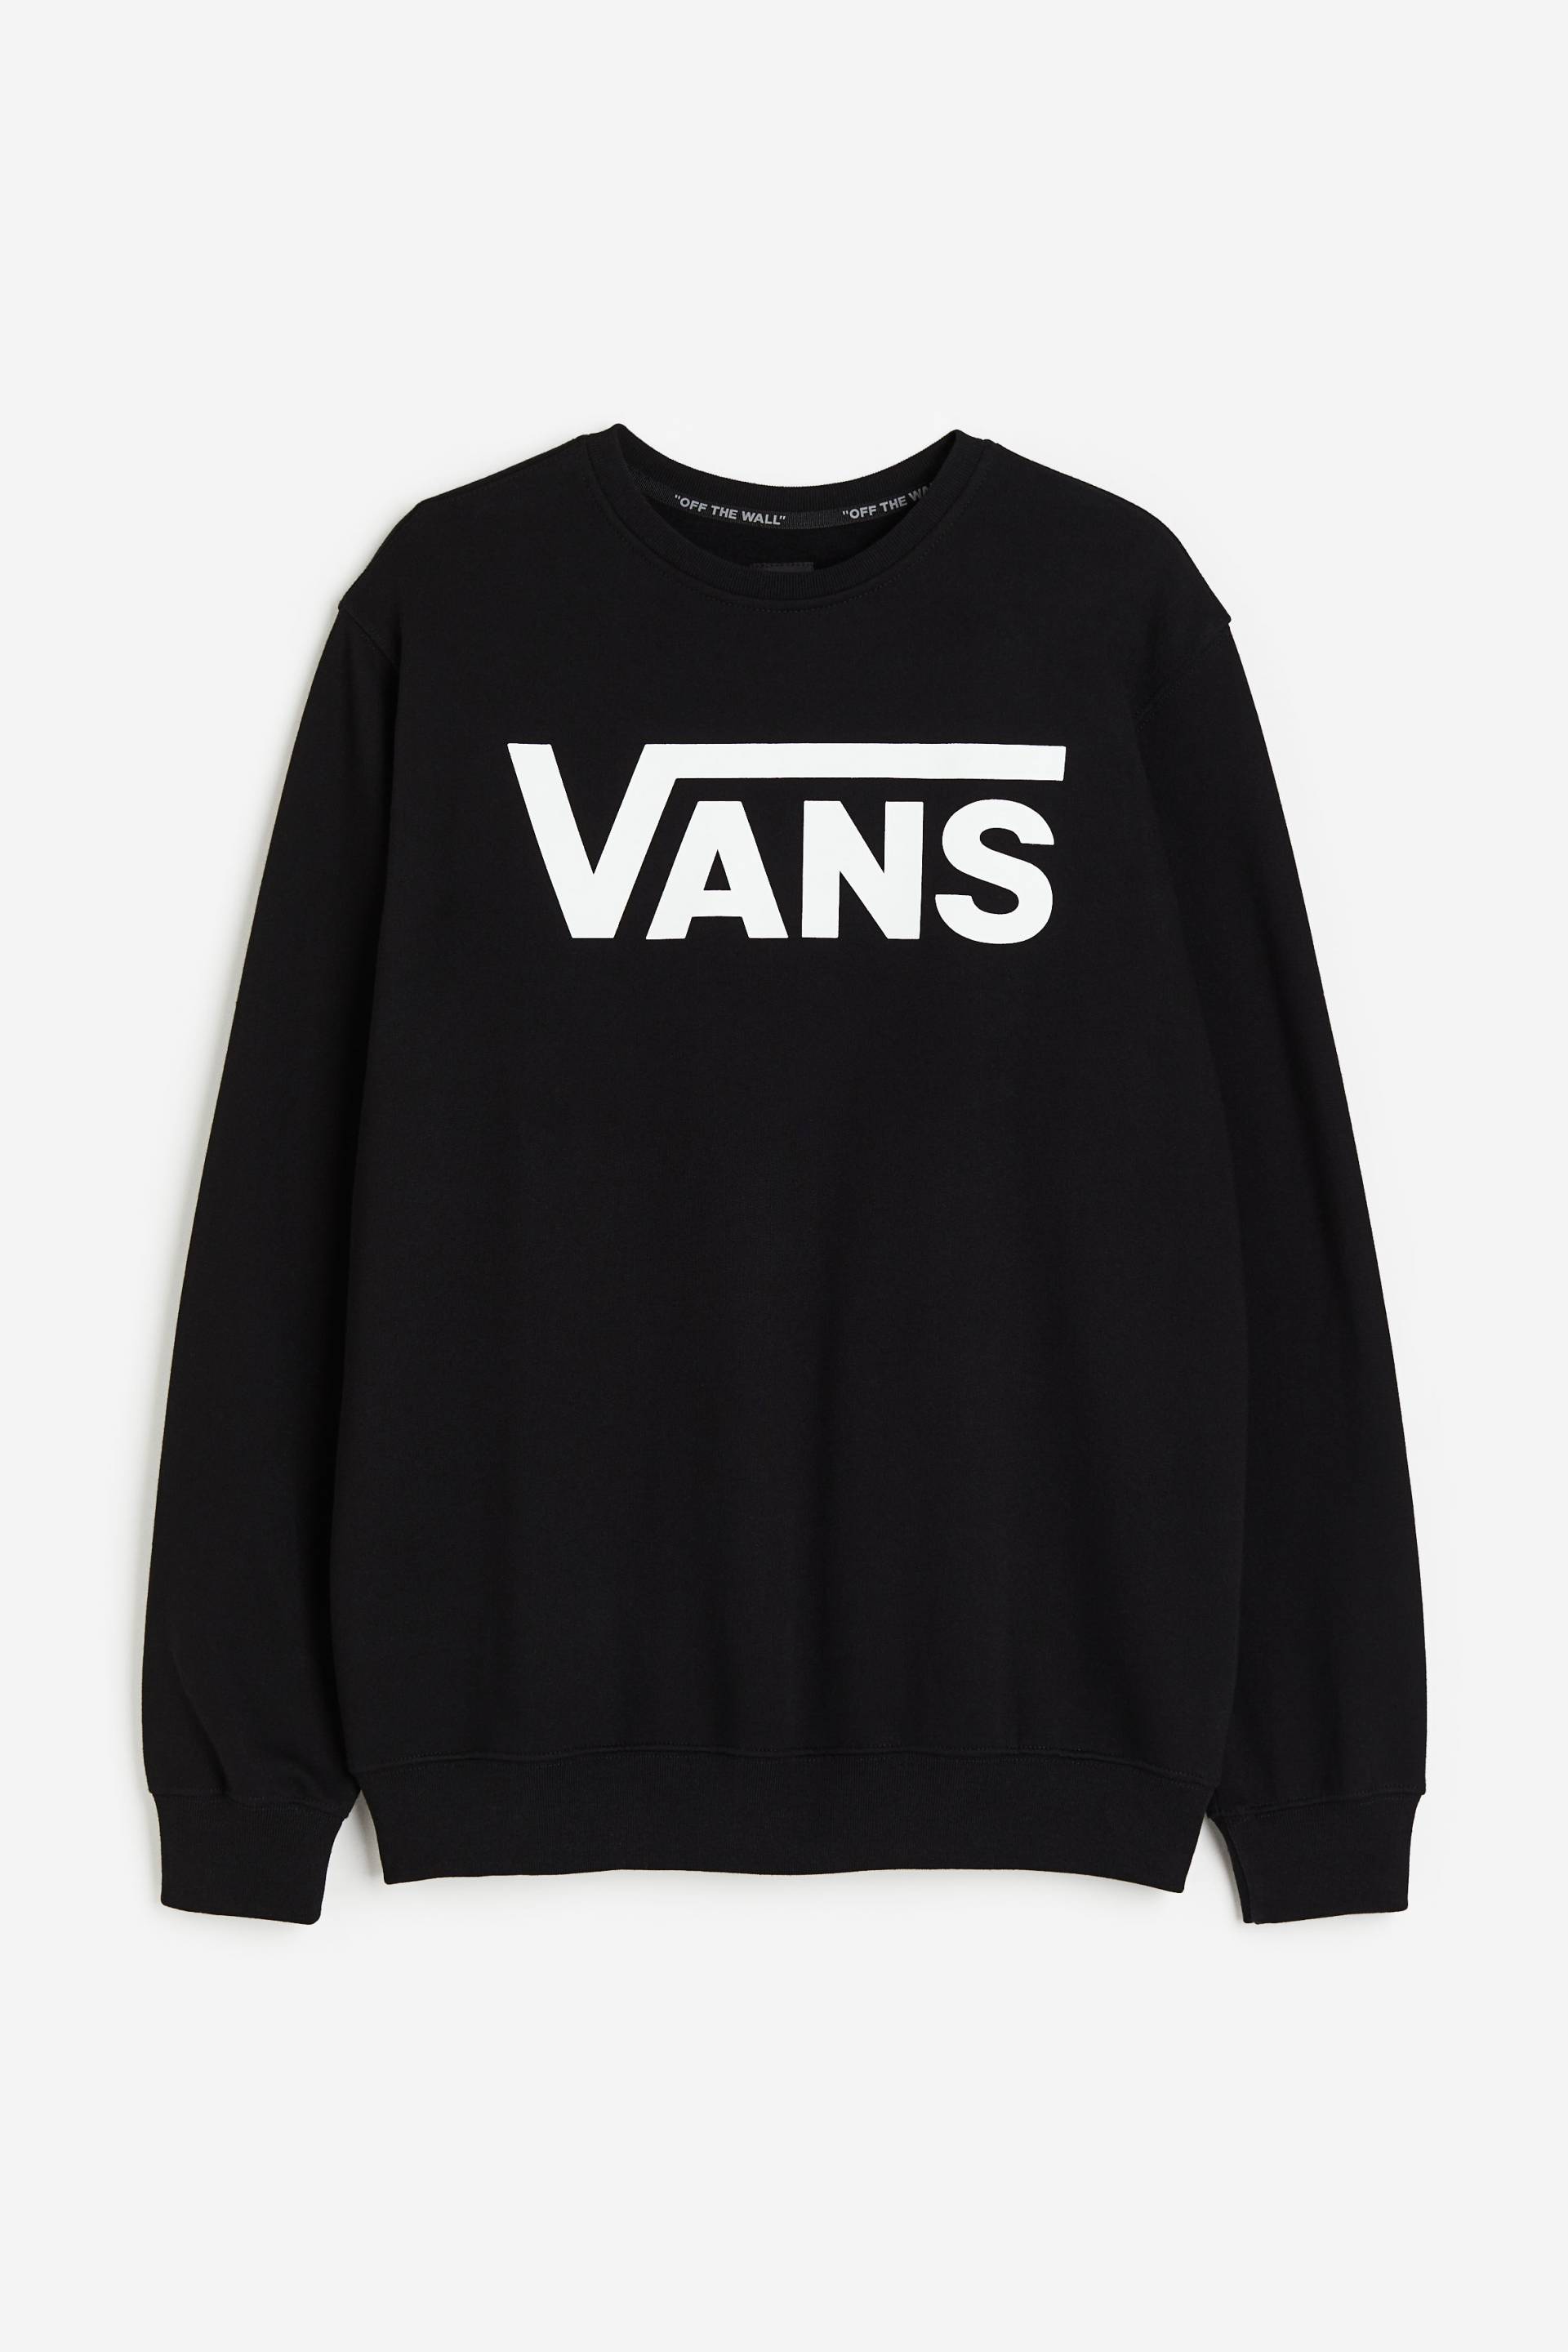 Vans Mn Classic Crew Ii Black/white, Sweatshirts in Größe L von Vans